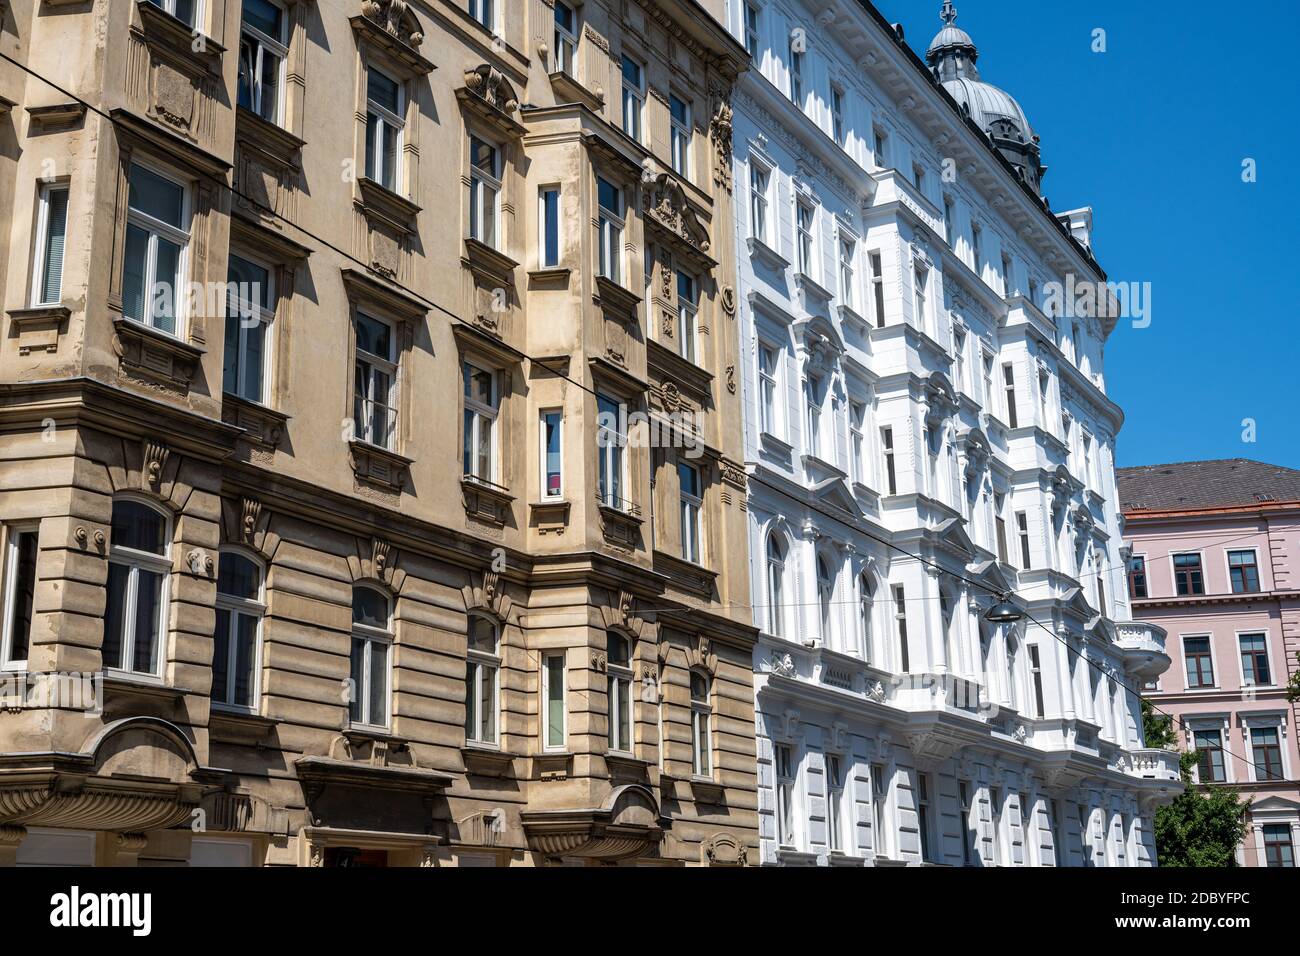 Anciens immeubles d'appartements rénovés vus à Vienne, Autriche Banque D'Images